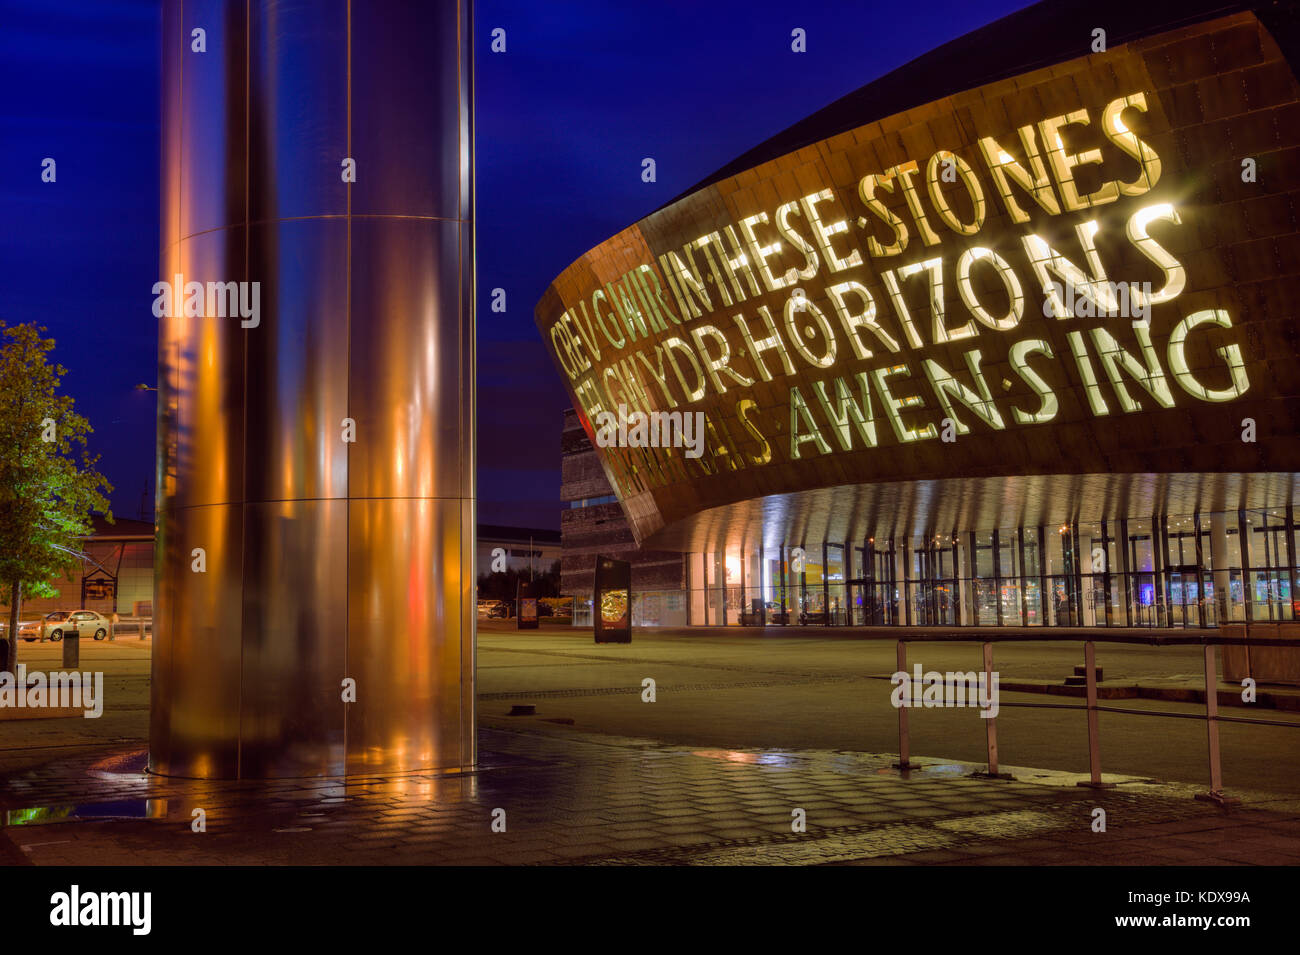 Le Cardiff Millennium Centre complexe artistique et tour de l'eau fontaine illuminée la nuit. La baie de Cardiff (Bae Caerdydd) Cardiff South Wales Royaume-uni Grande-Bretagne Banque D'Images